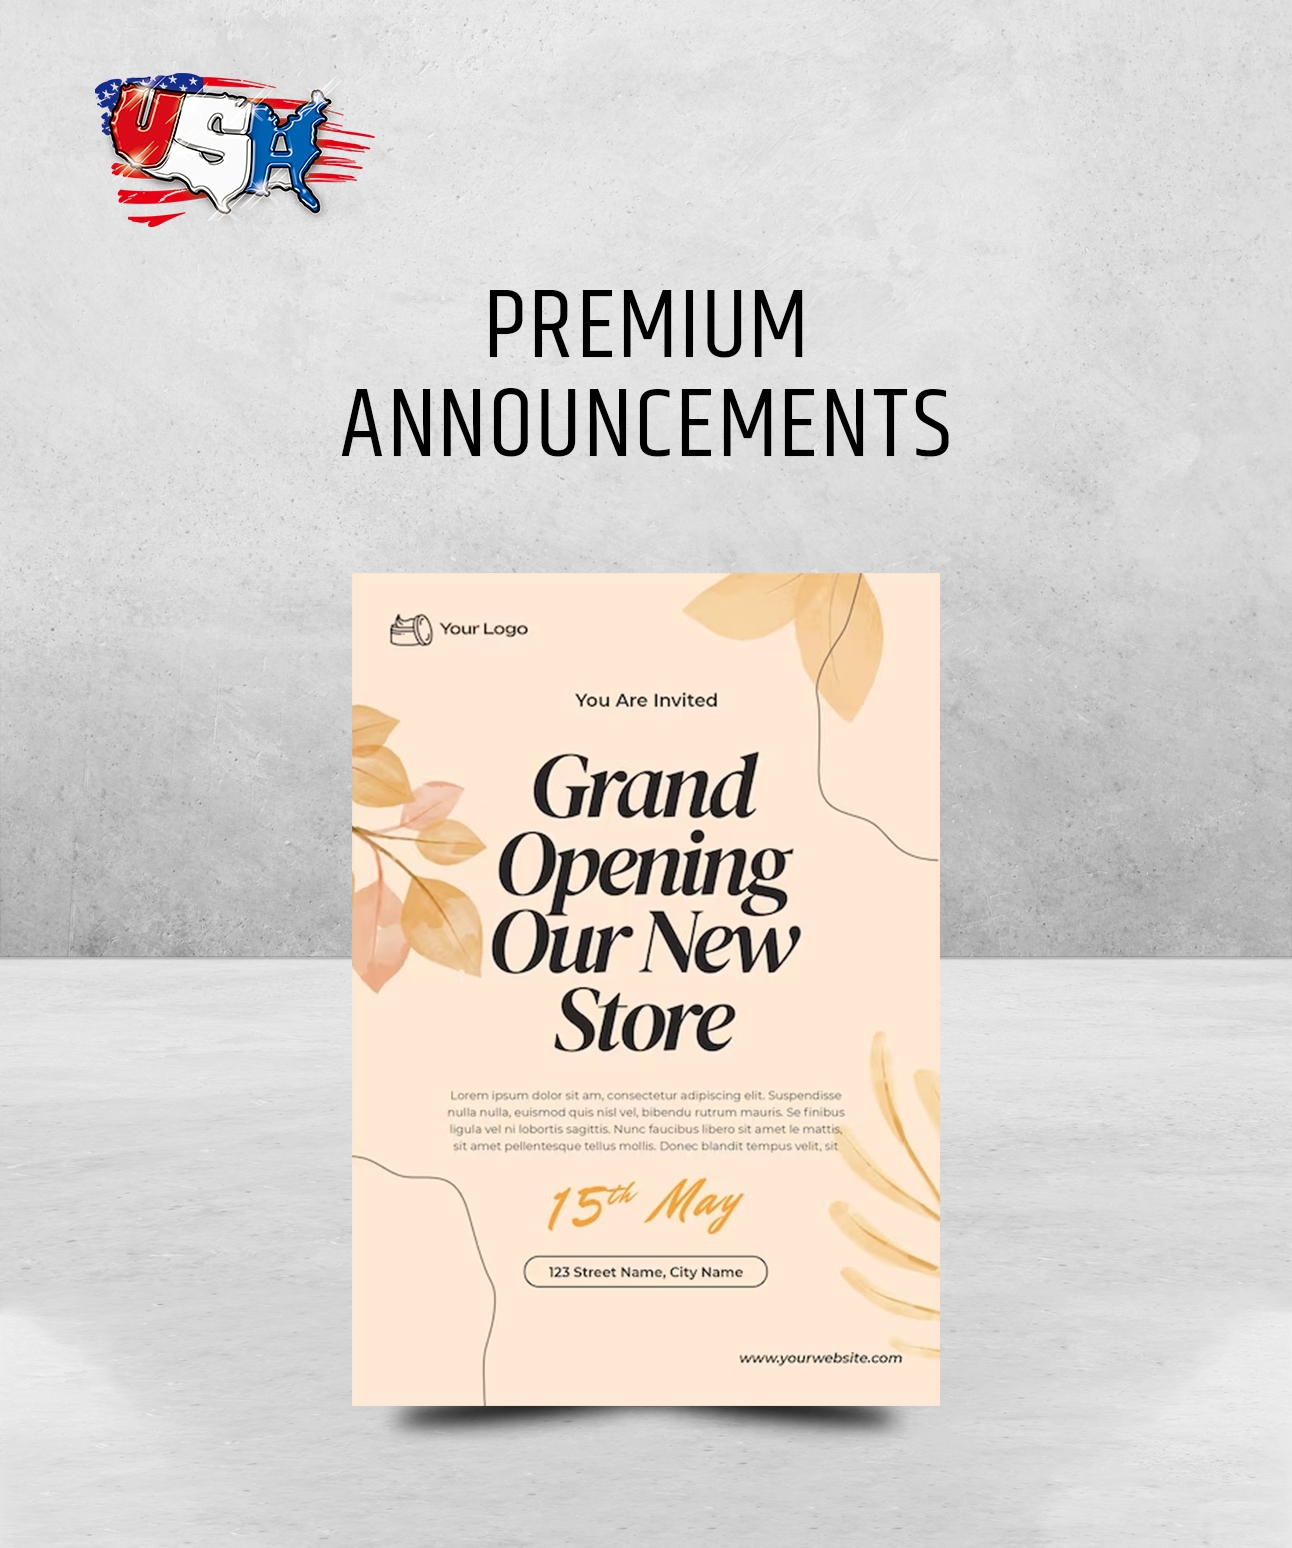 Premium Announcements